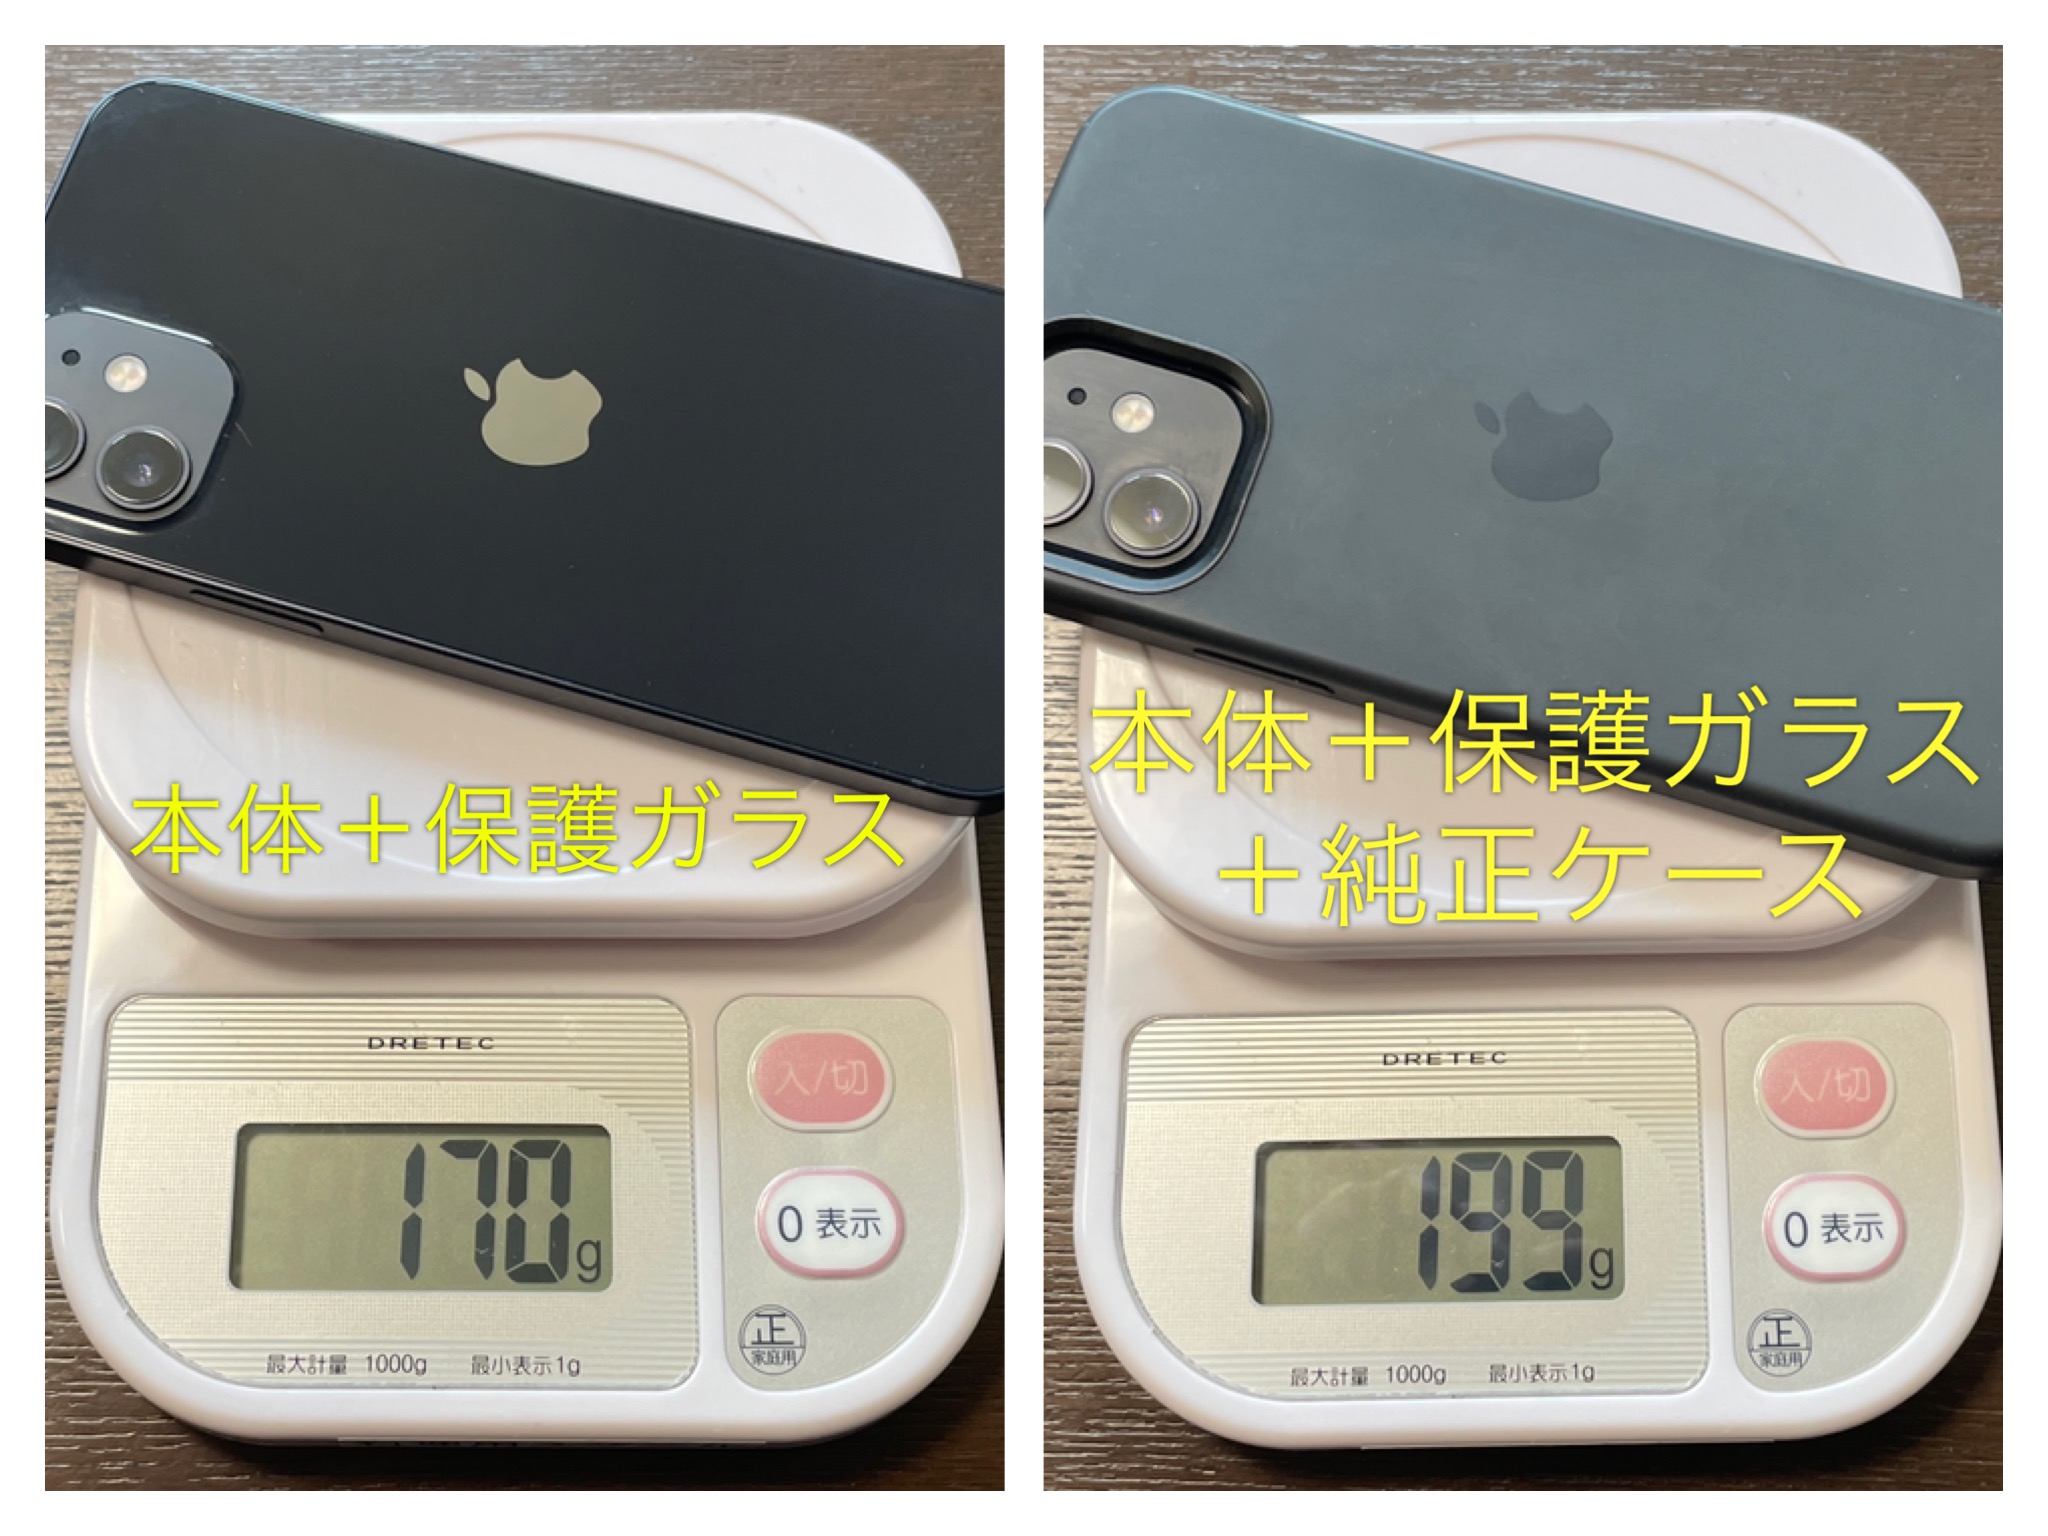 計量器で比較している2台のiPhone12